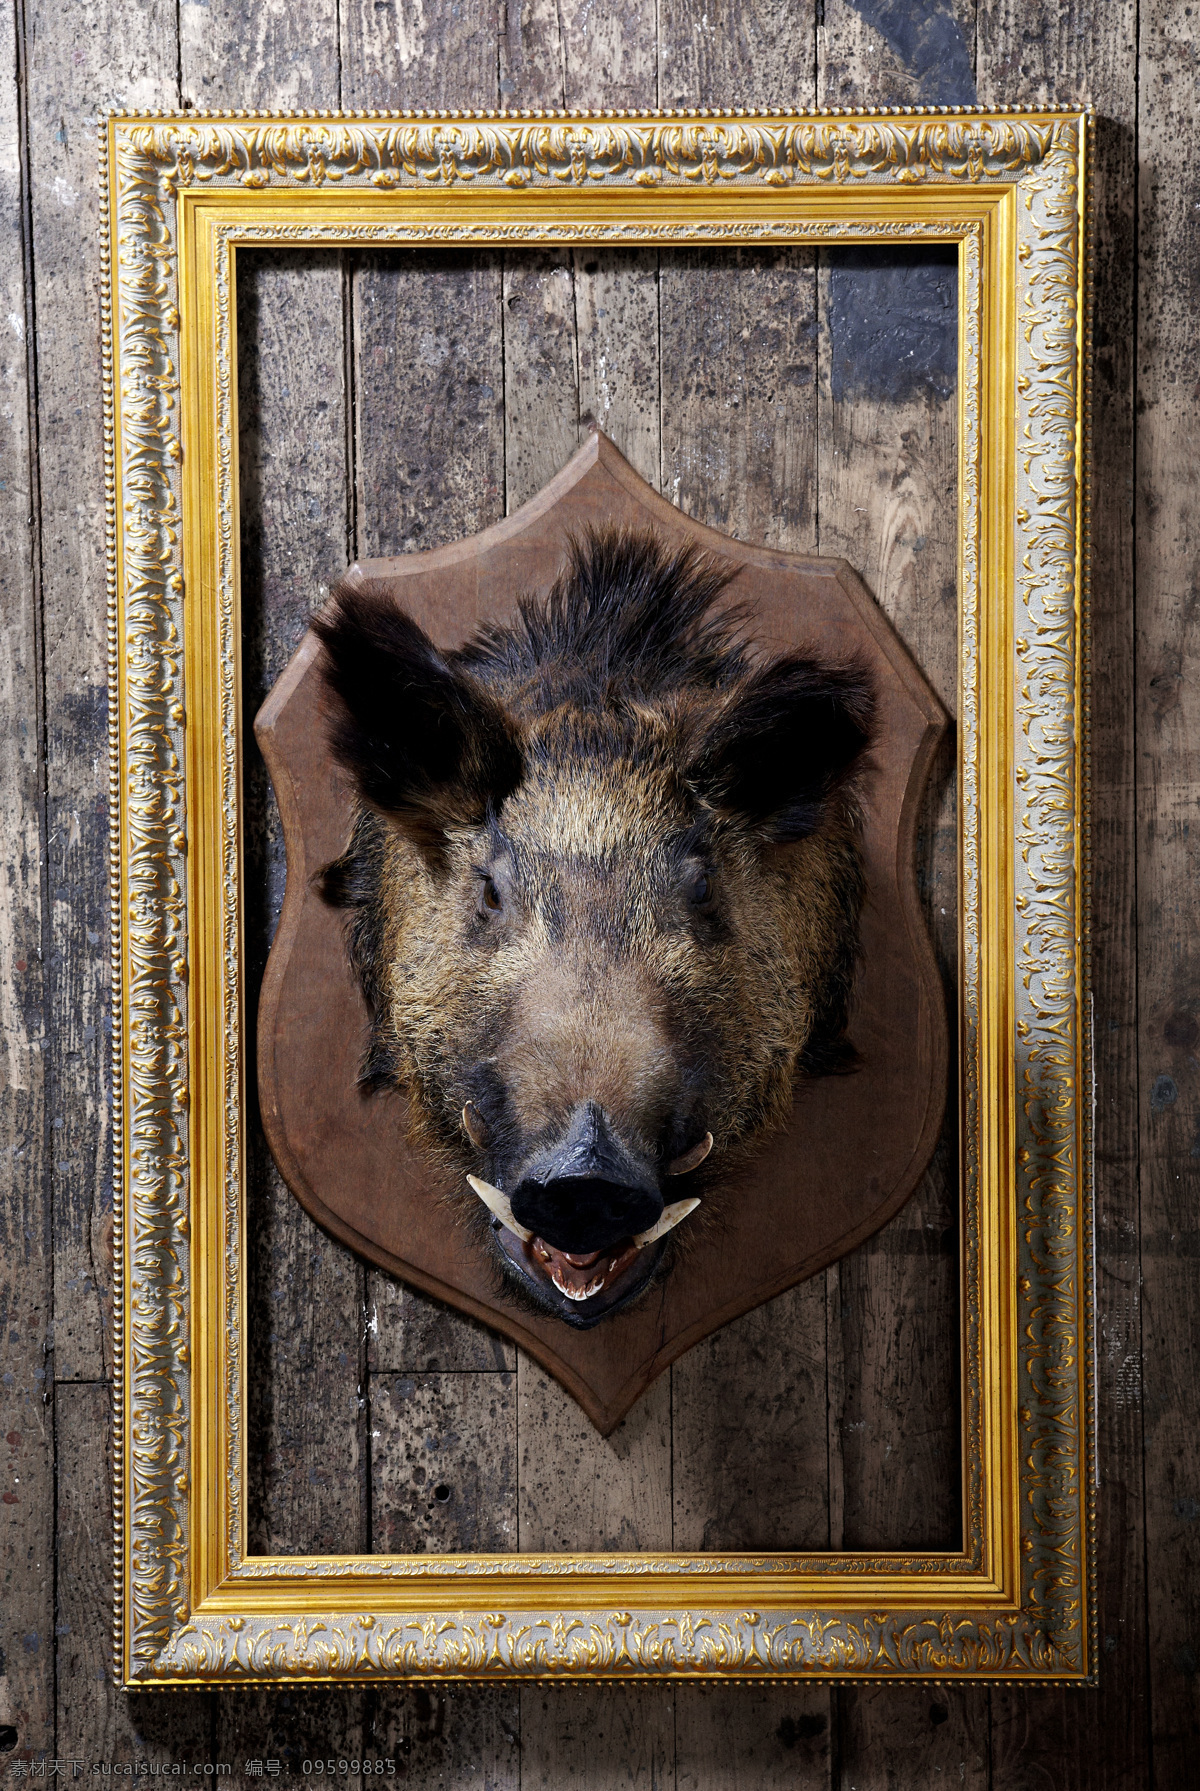 野猪 相框 猎物 画框 装饰画框 装饰品 其他类别 生活百科